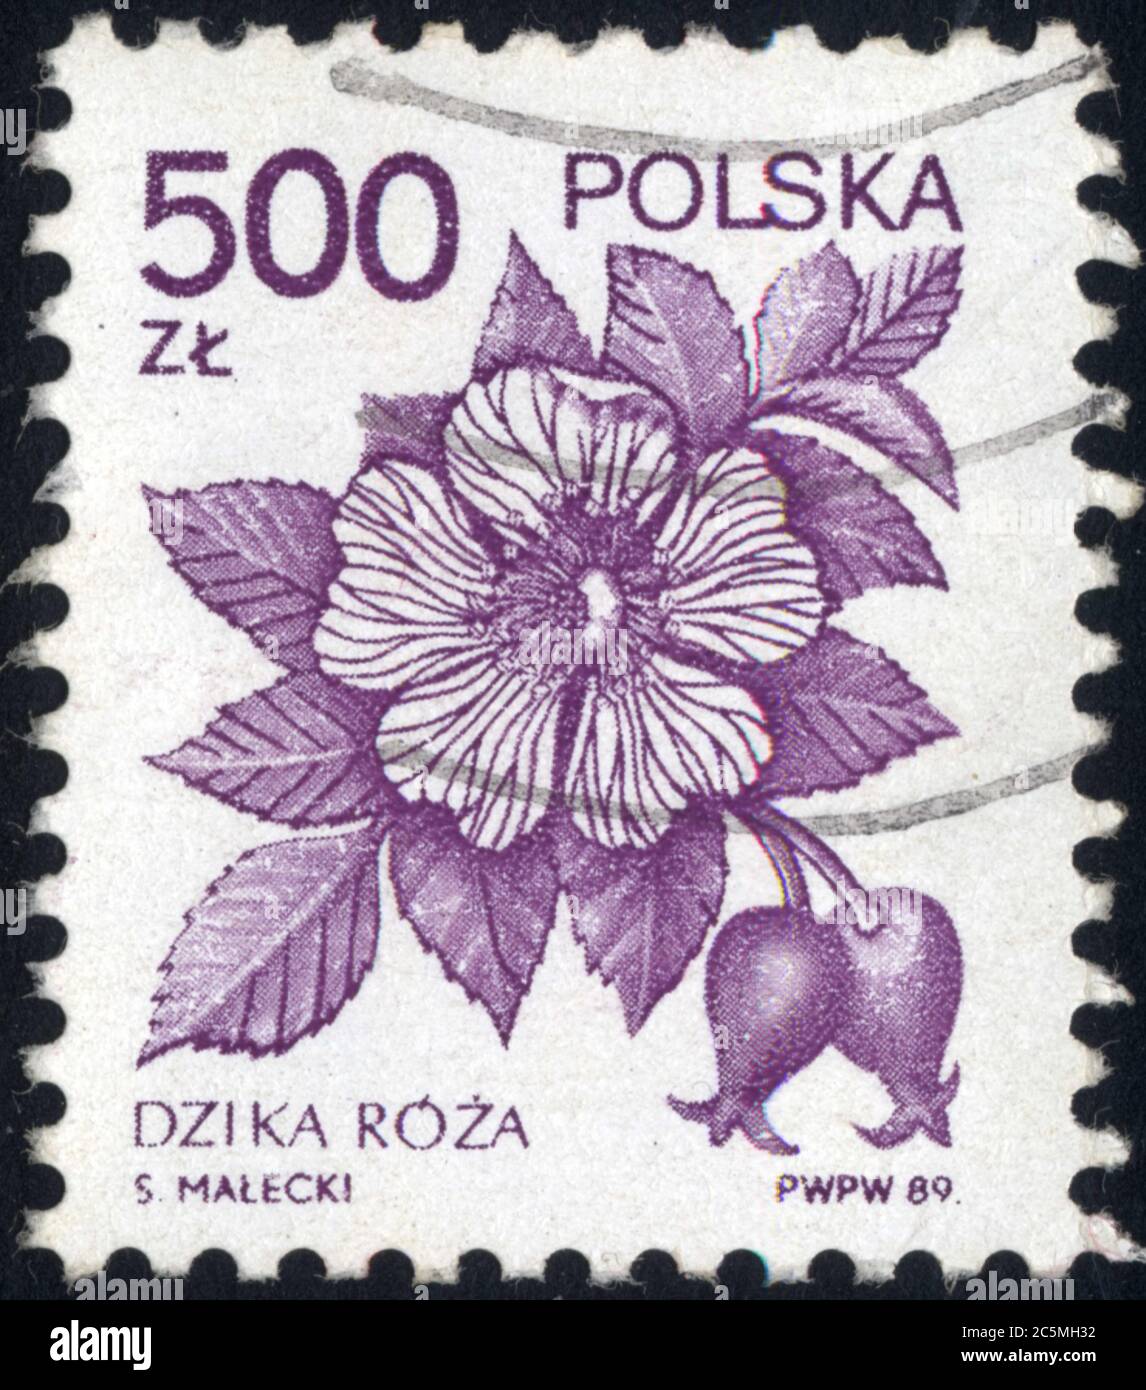 dzika roza.polska.500zl.1989 Stock Photo - Alamy